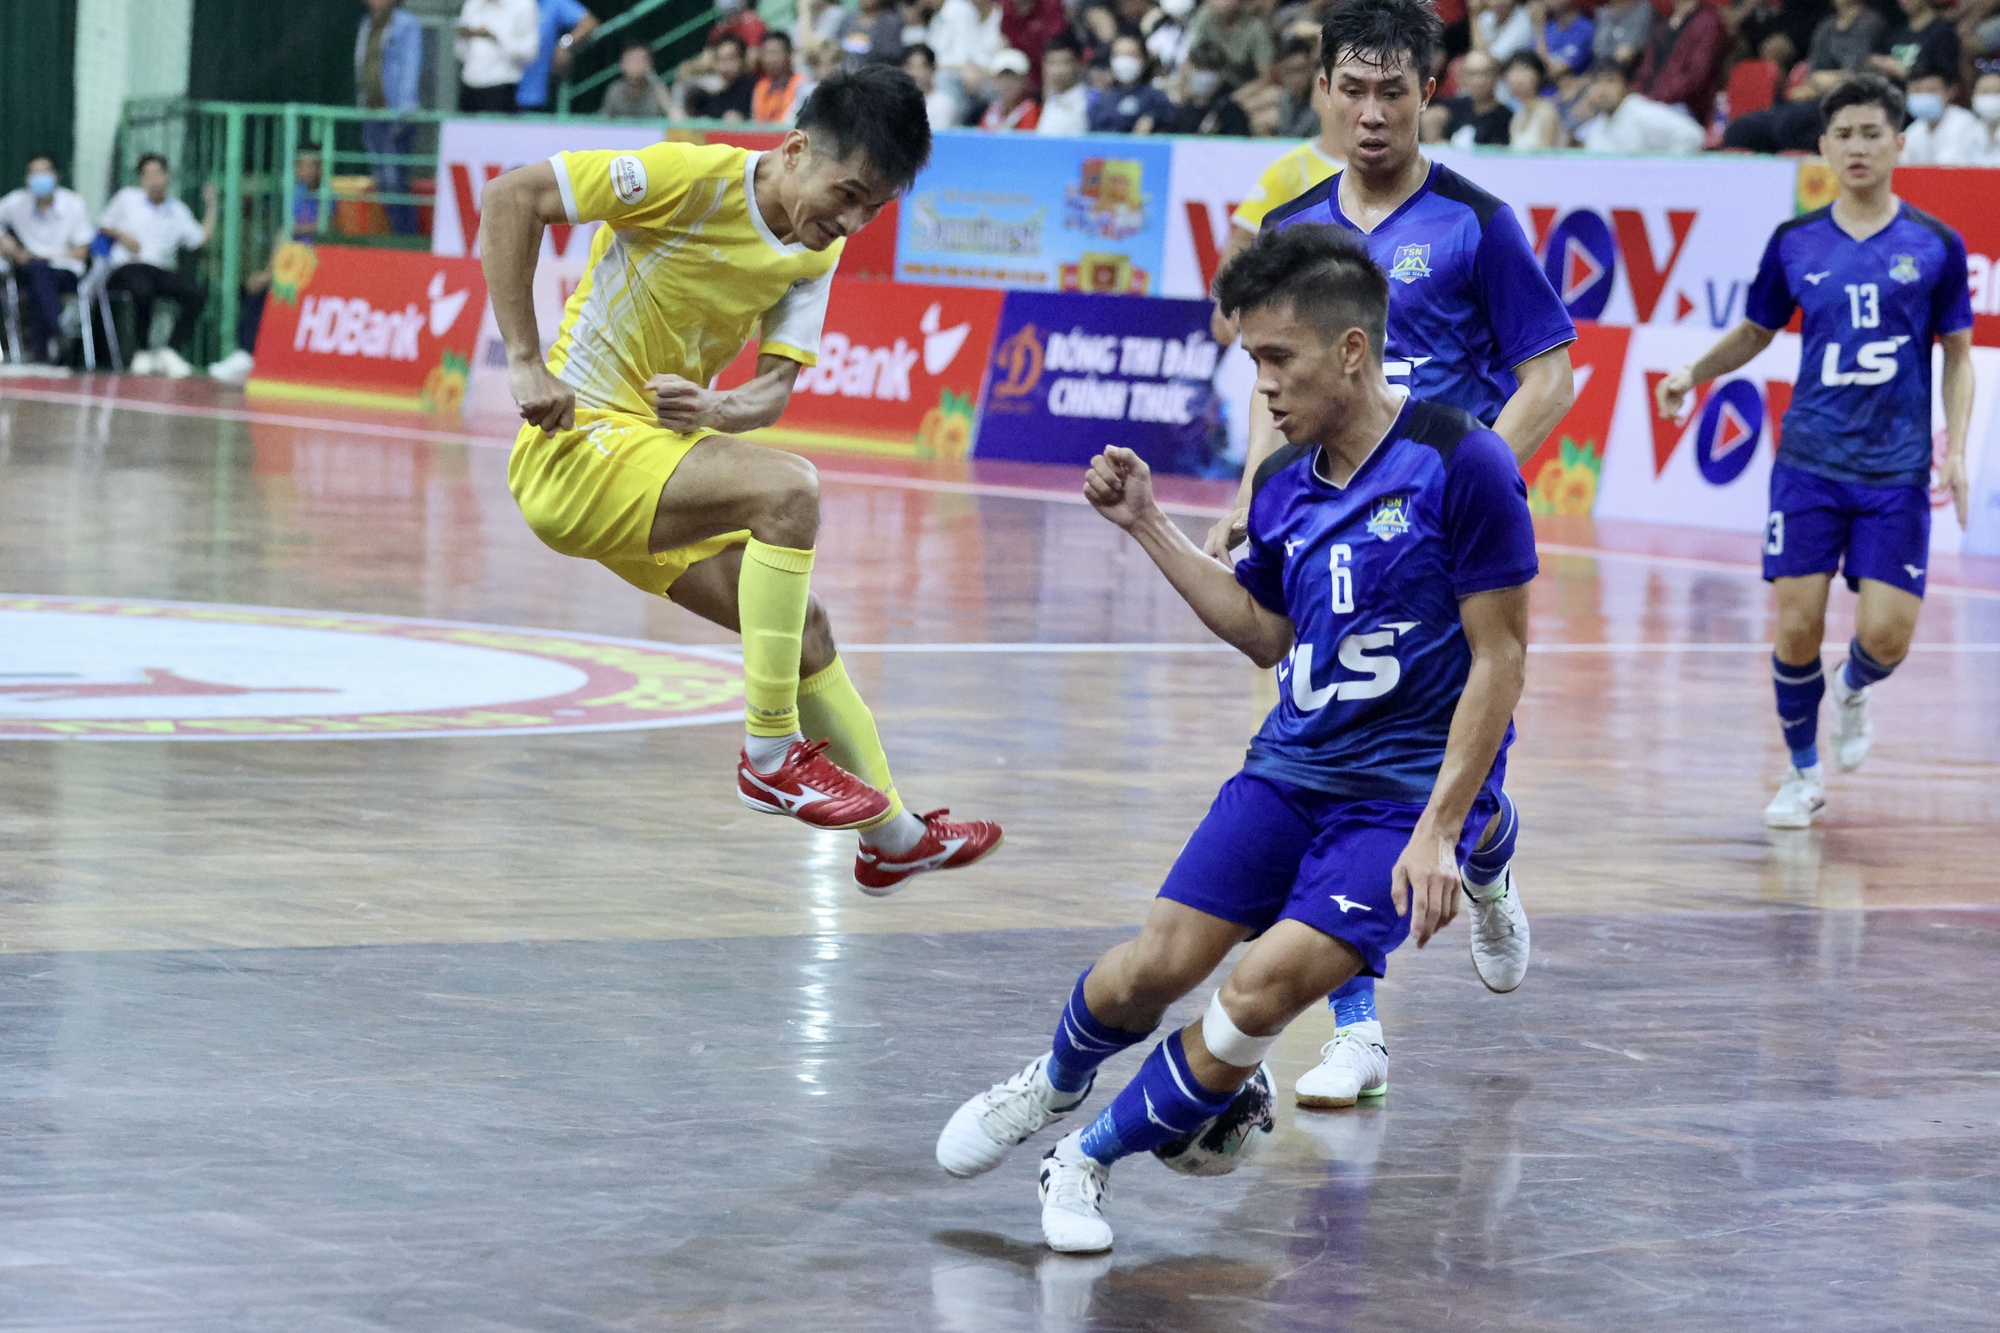 CLB Thái Sơn Nam tiếp tục trở thành cựu vương giải futsal quốc nội - Ảnh 1.